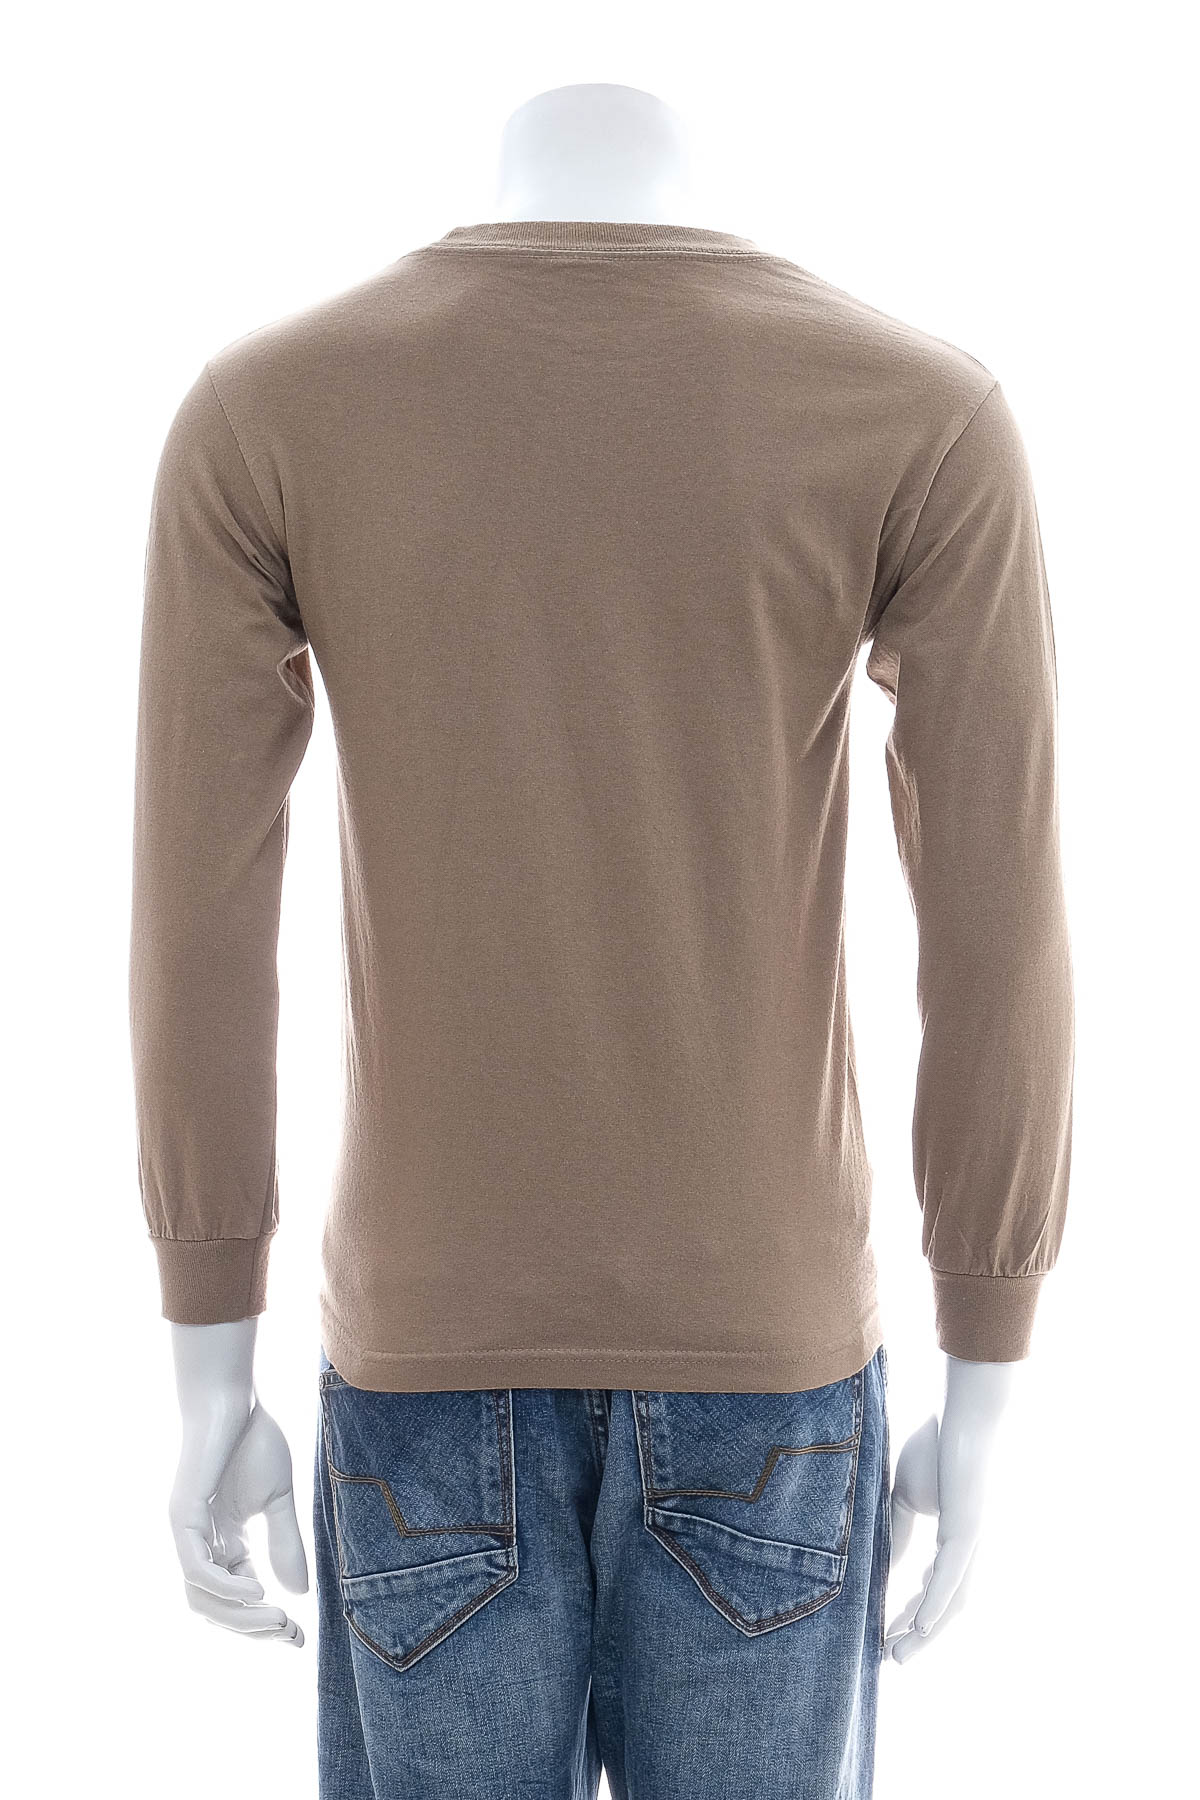 Men's blouse - ALSTYLE APPAREL & ACTIVE WEAR - 1